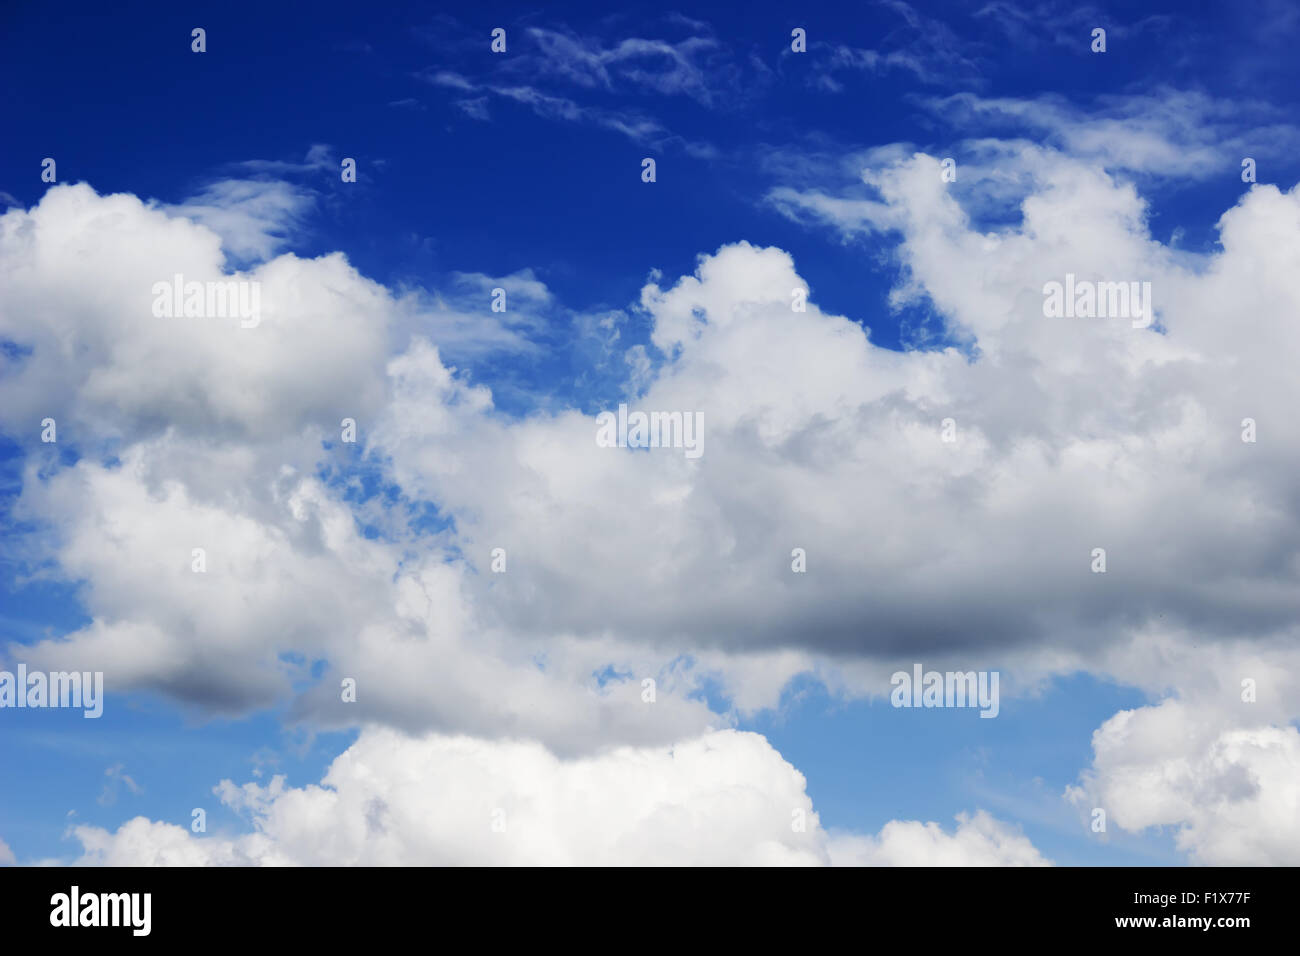 El cielo azul con nubes blancas. Foto de stock